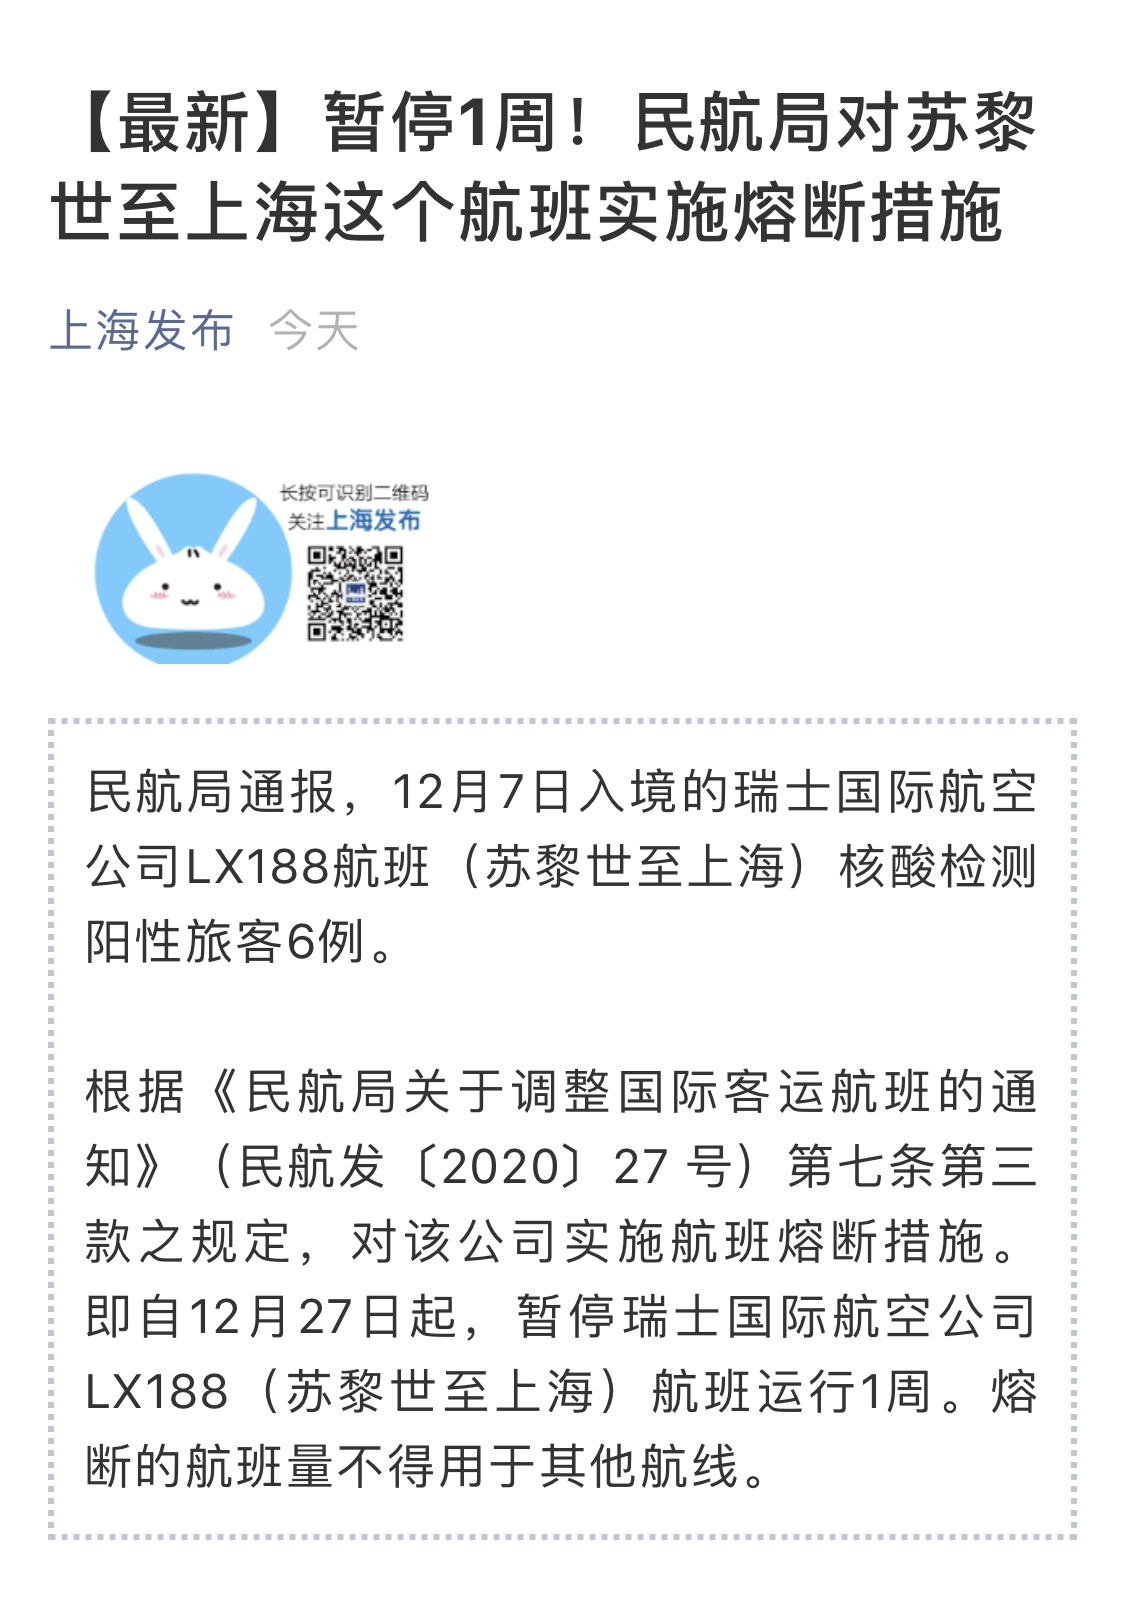 上海本地新闻客户端上海邮币卡客户端下载